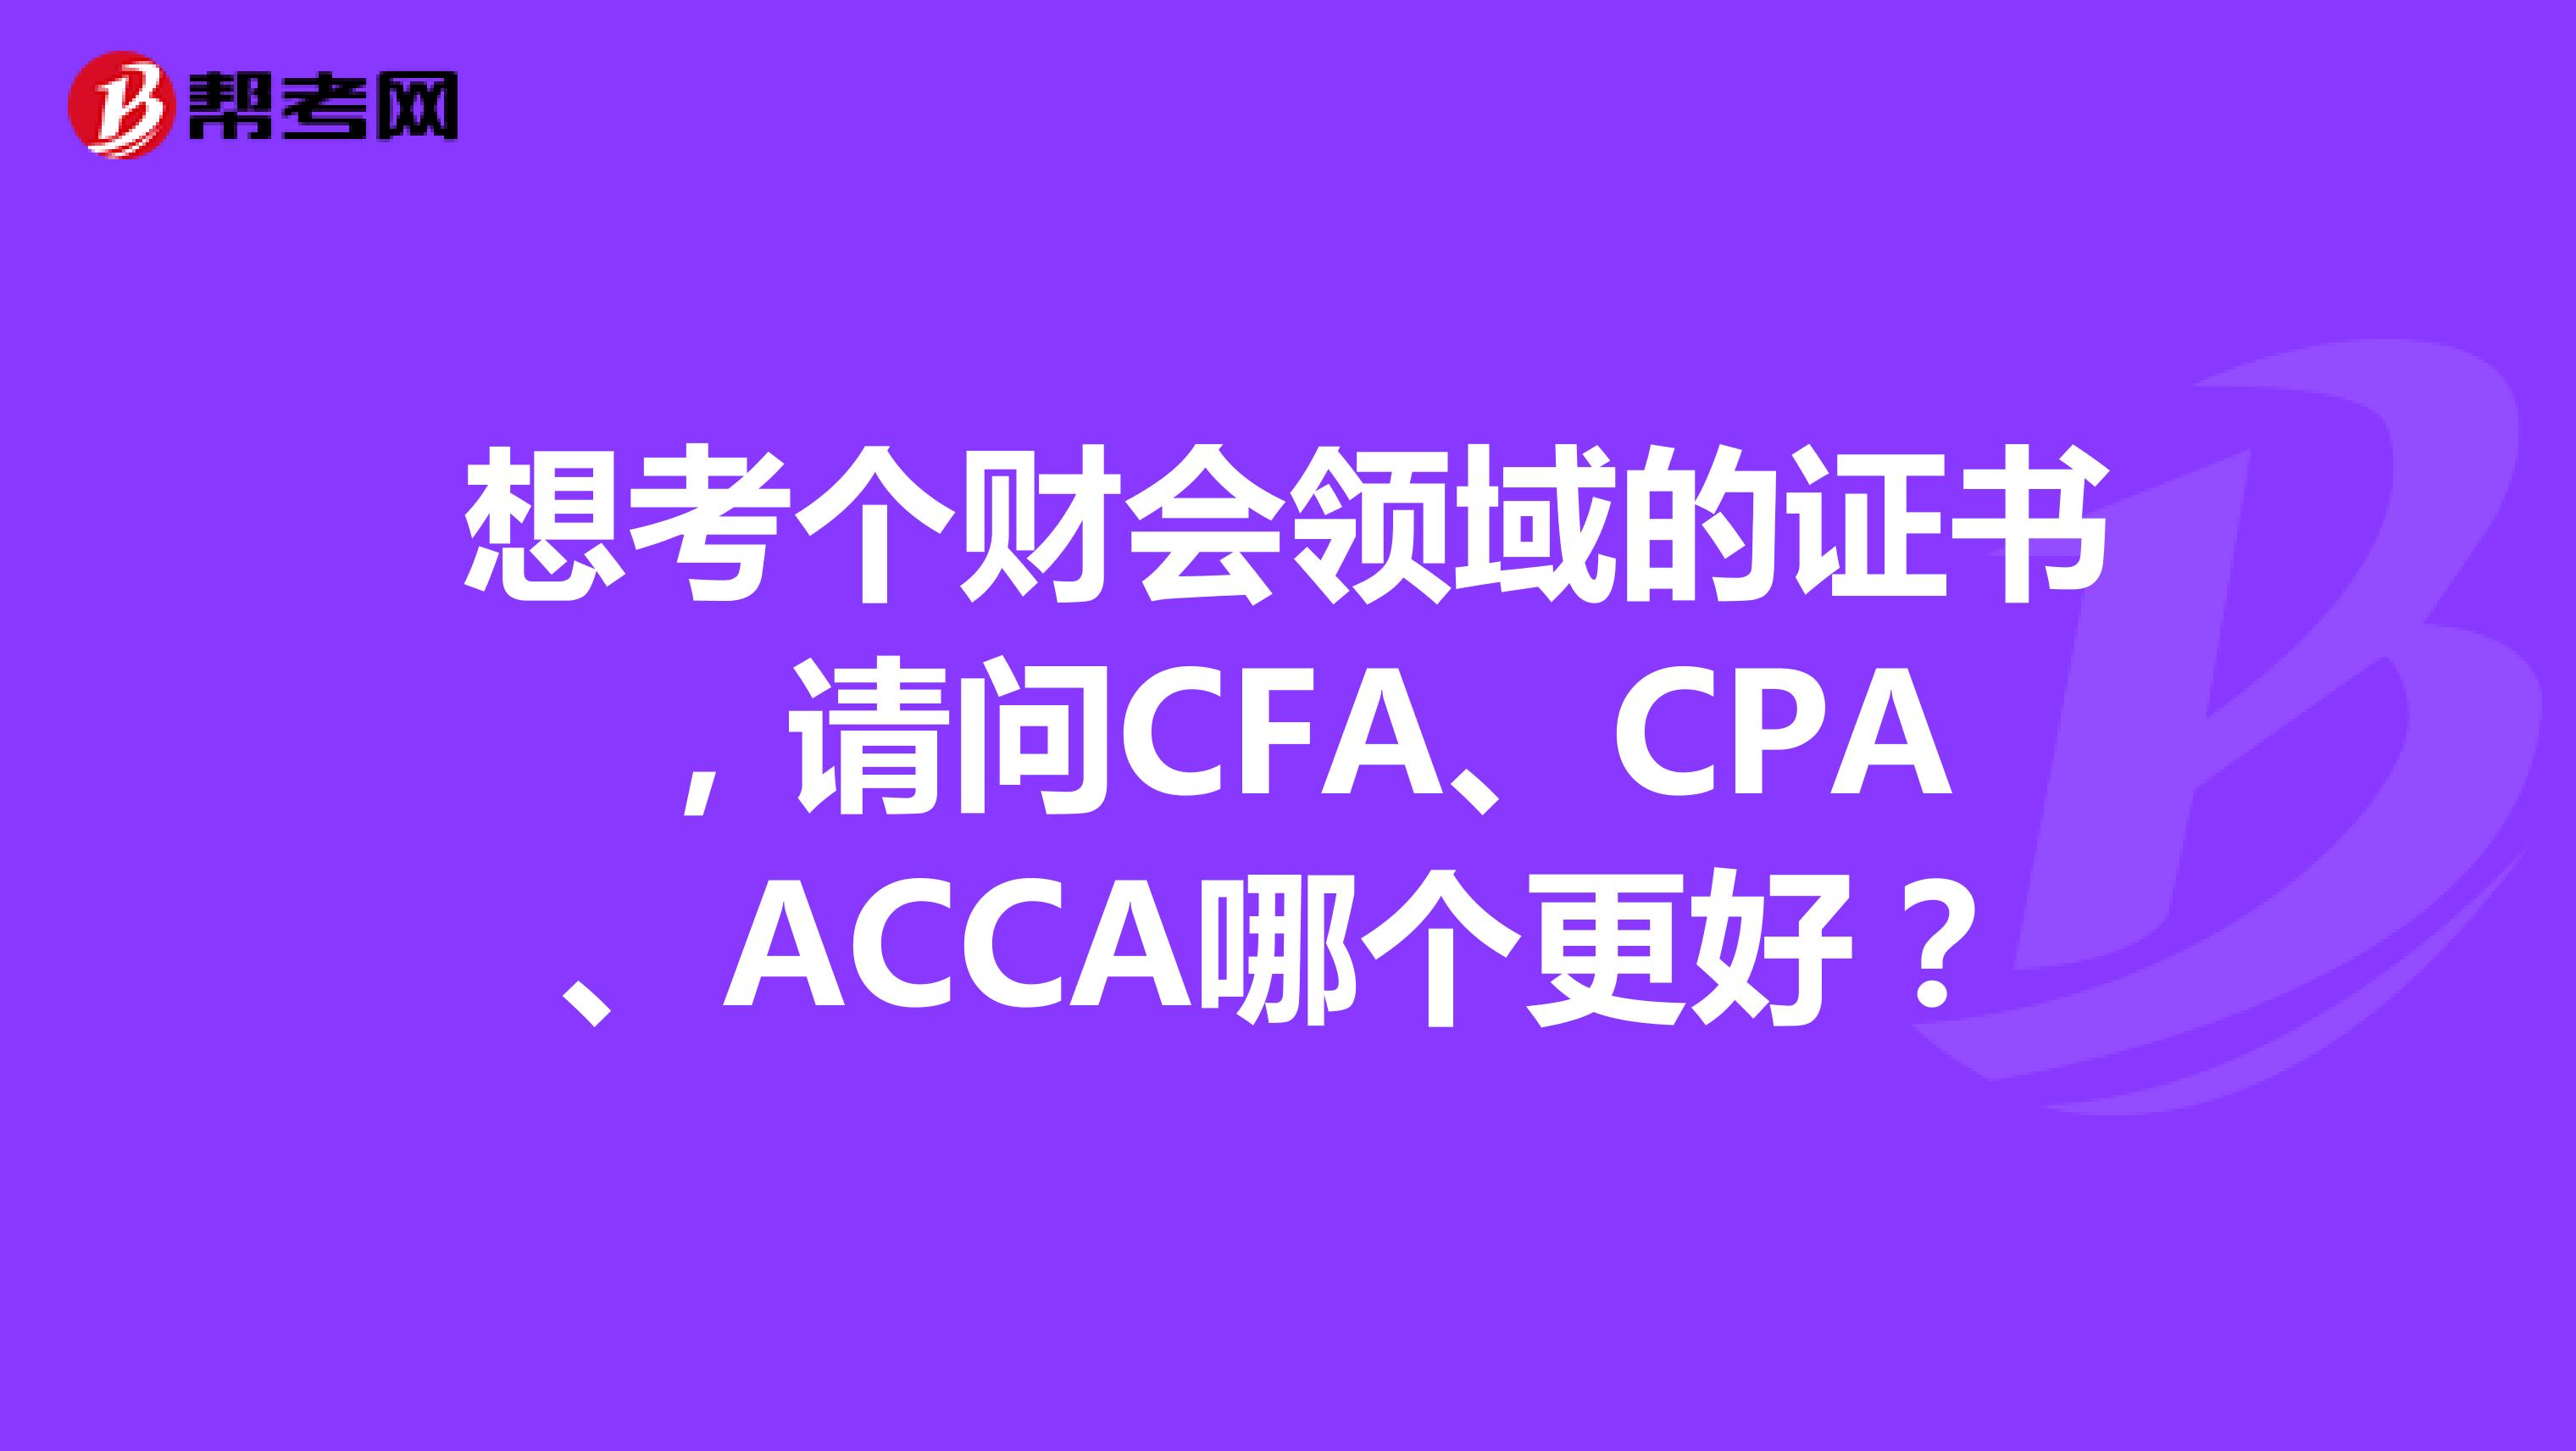 想考个财会领域的证书，请问CFA、CPA、ACCA哪个更好？